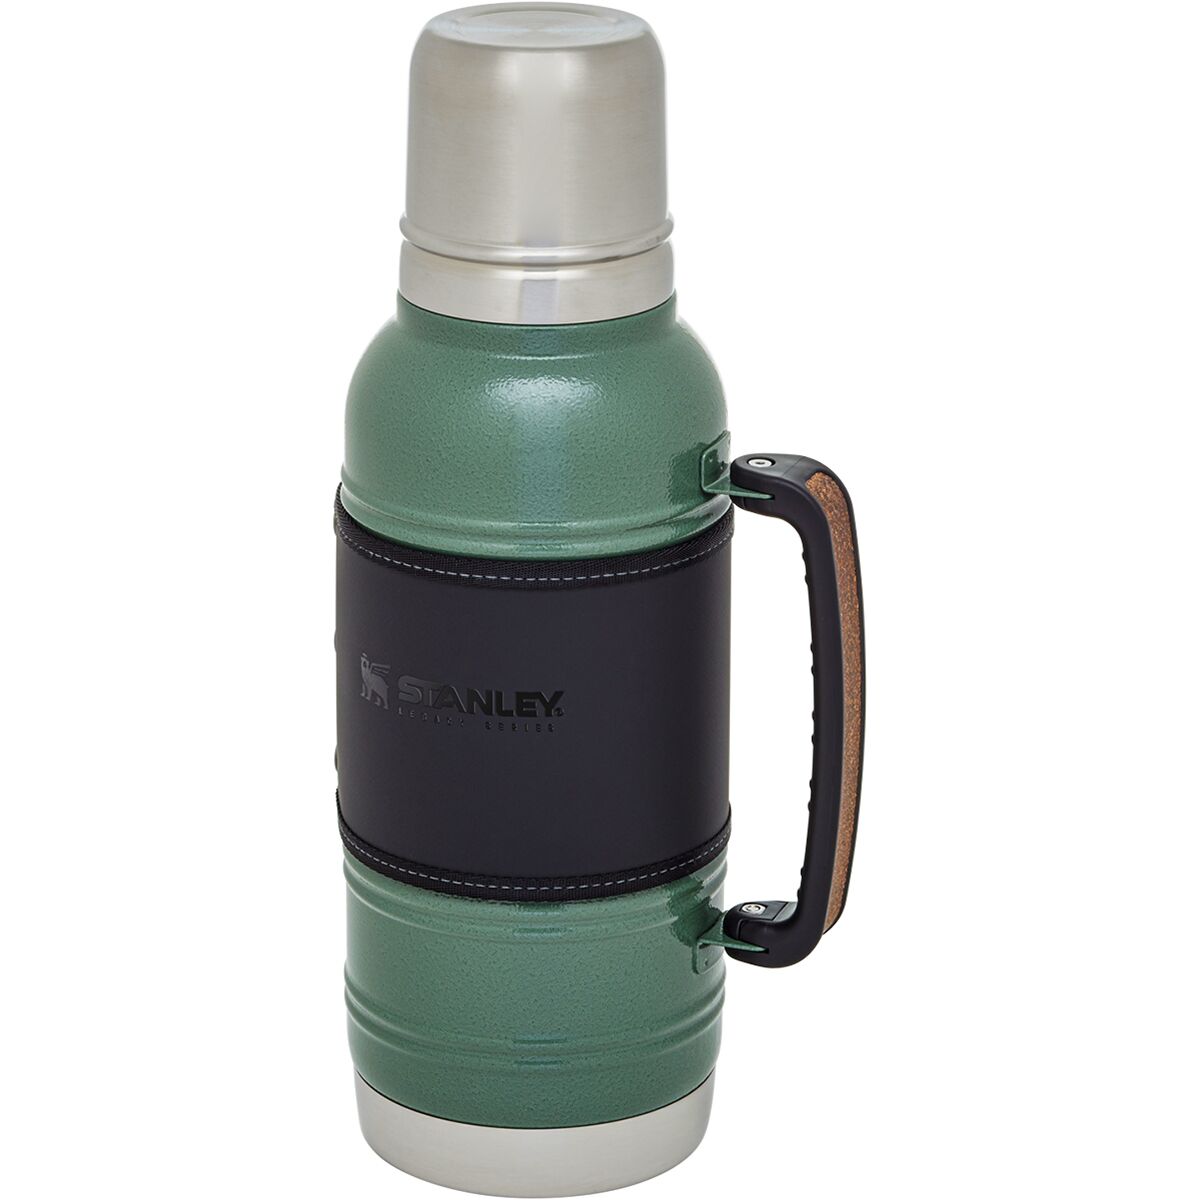 Stanley / The Quadvac Thermal Bottle 1.1 QT